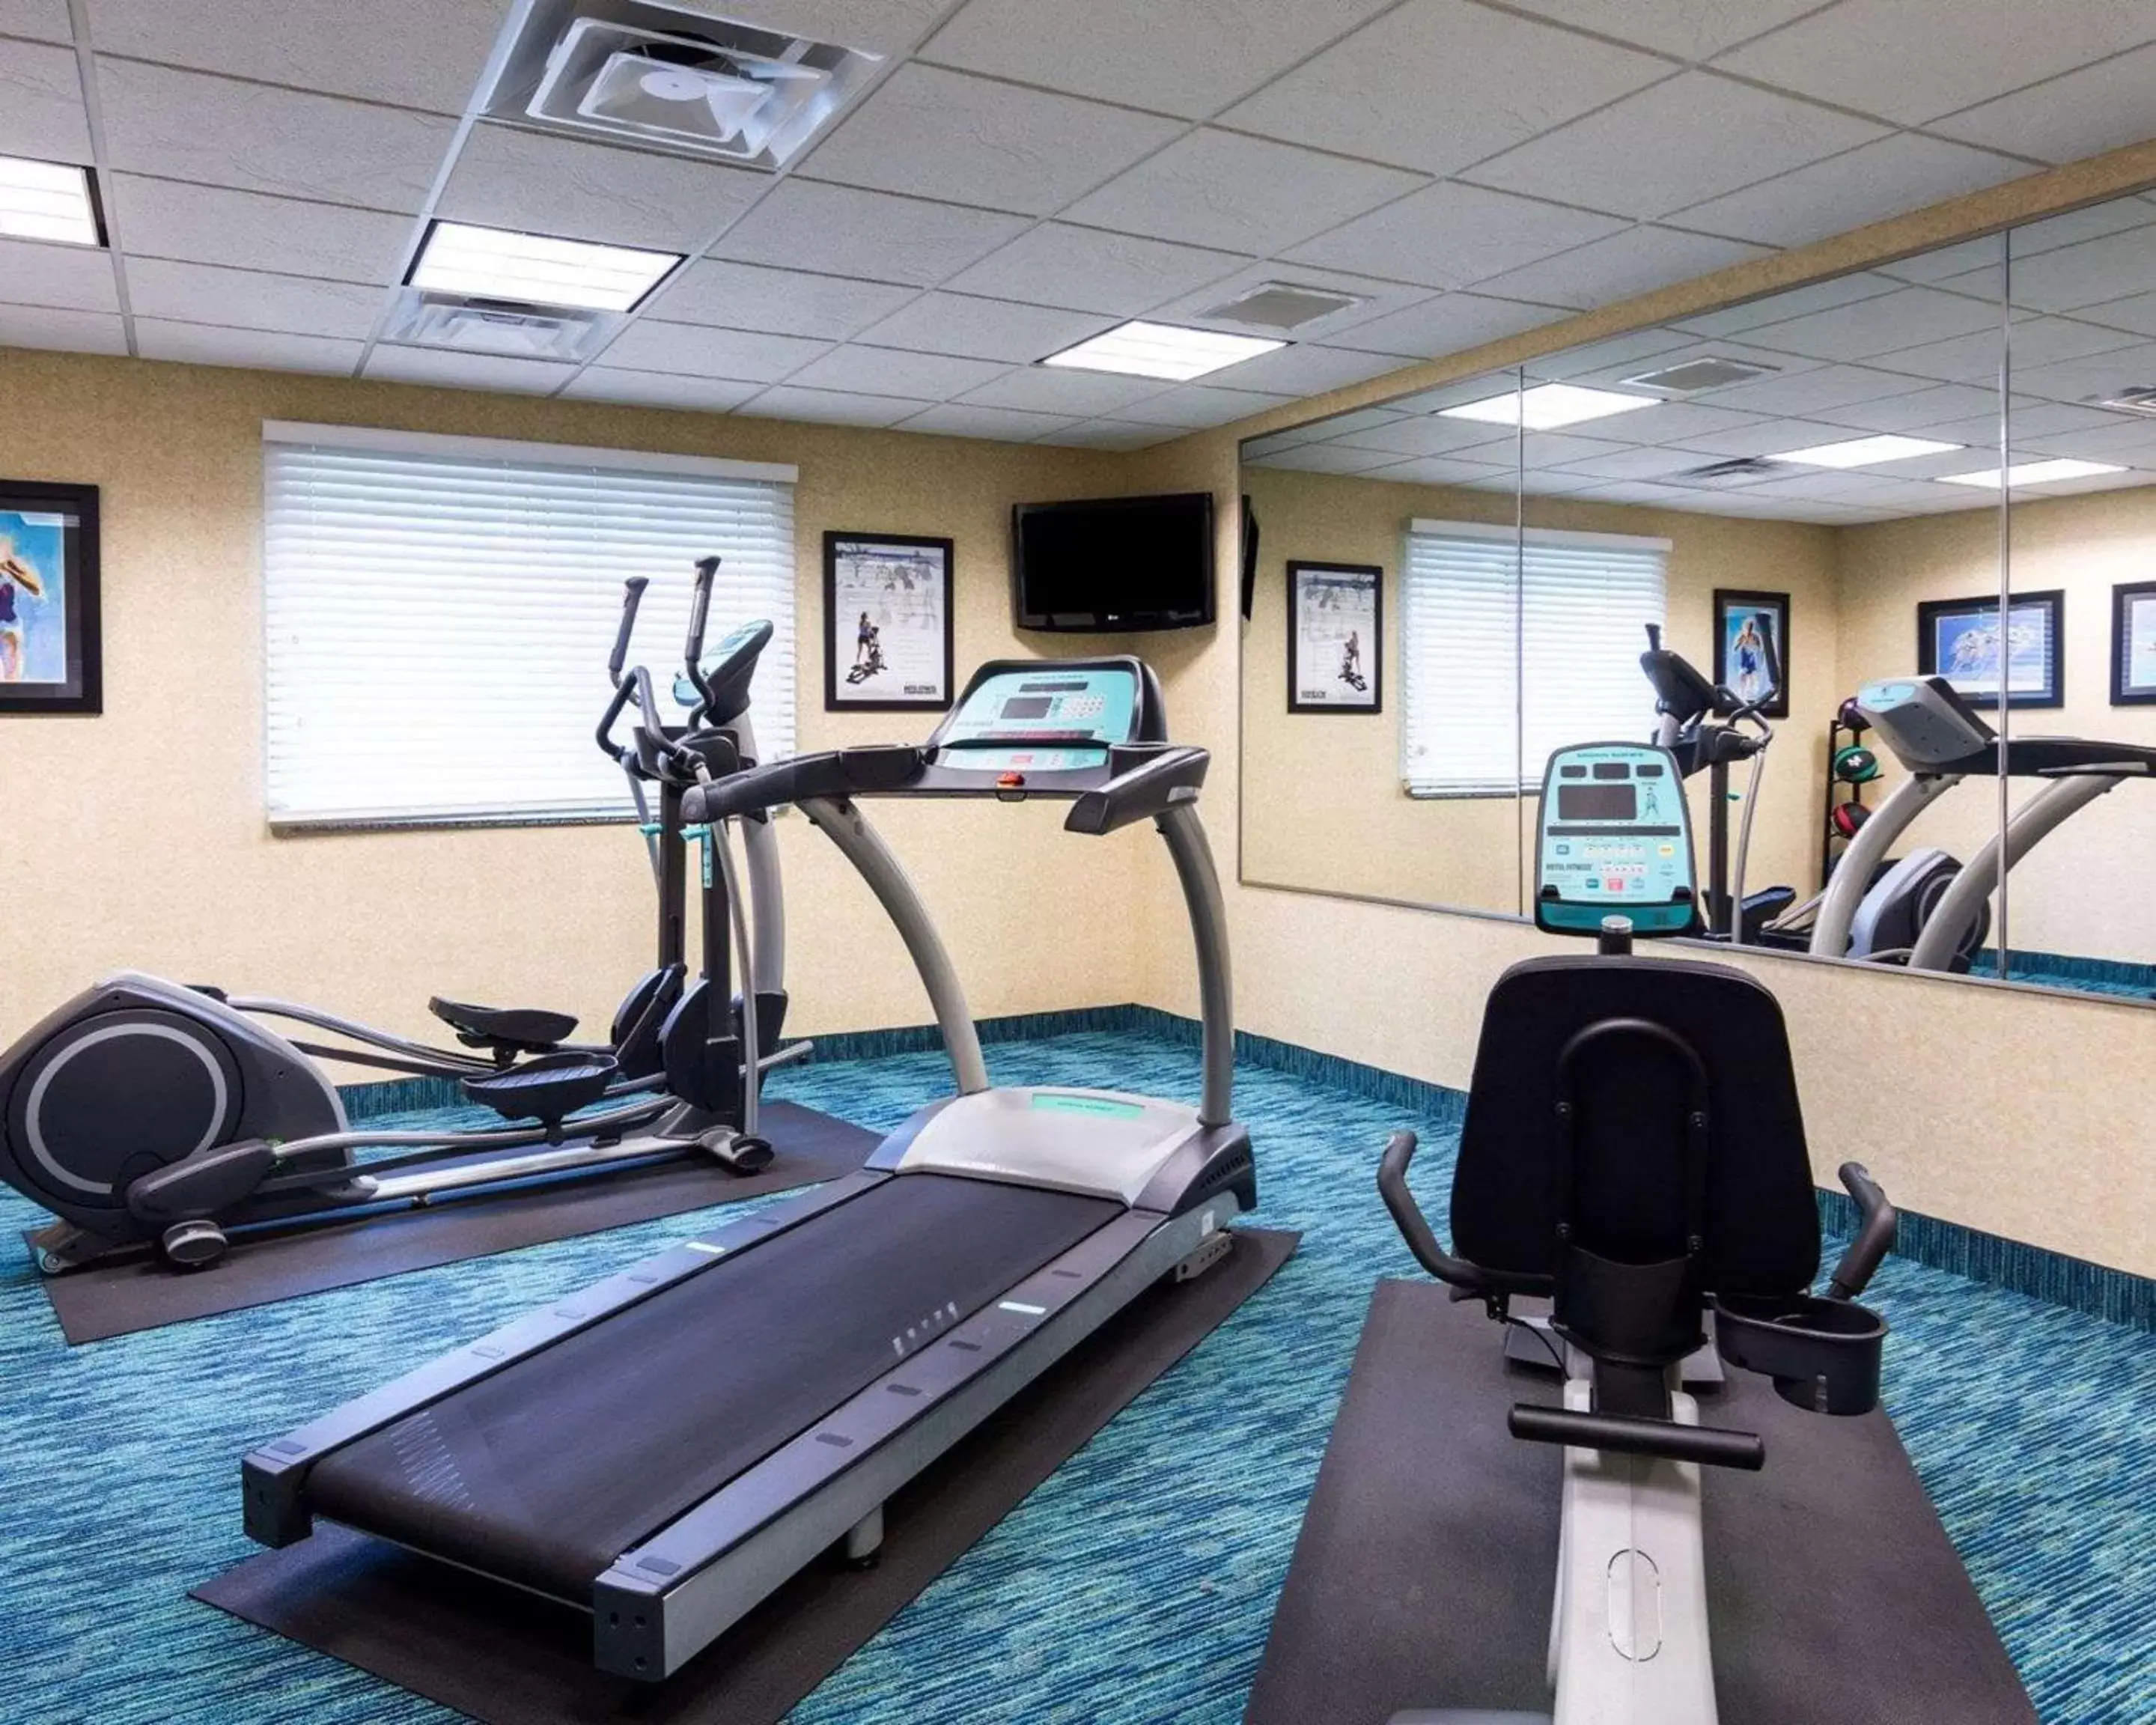 Fitness centre/facilities, Fitness Center/Facilities in Suburban Studios Quantico